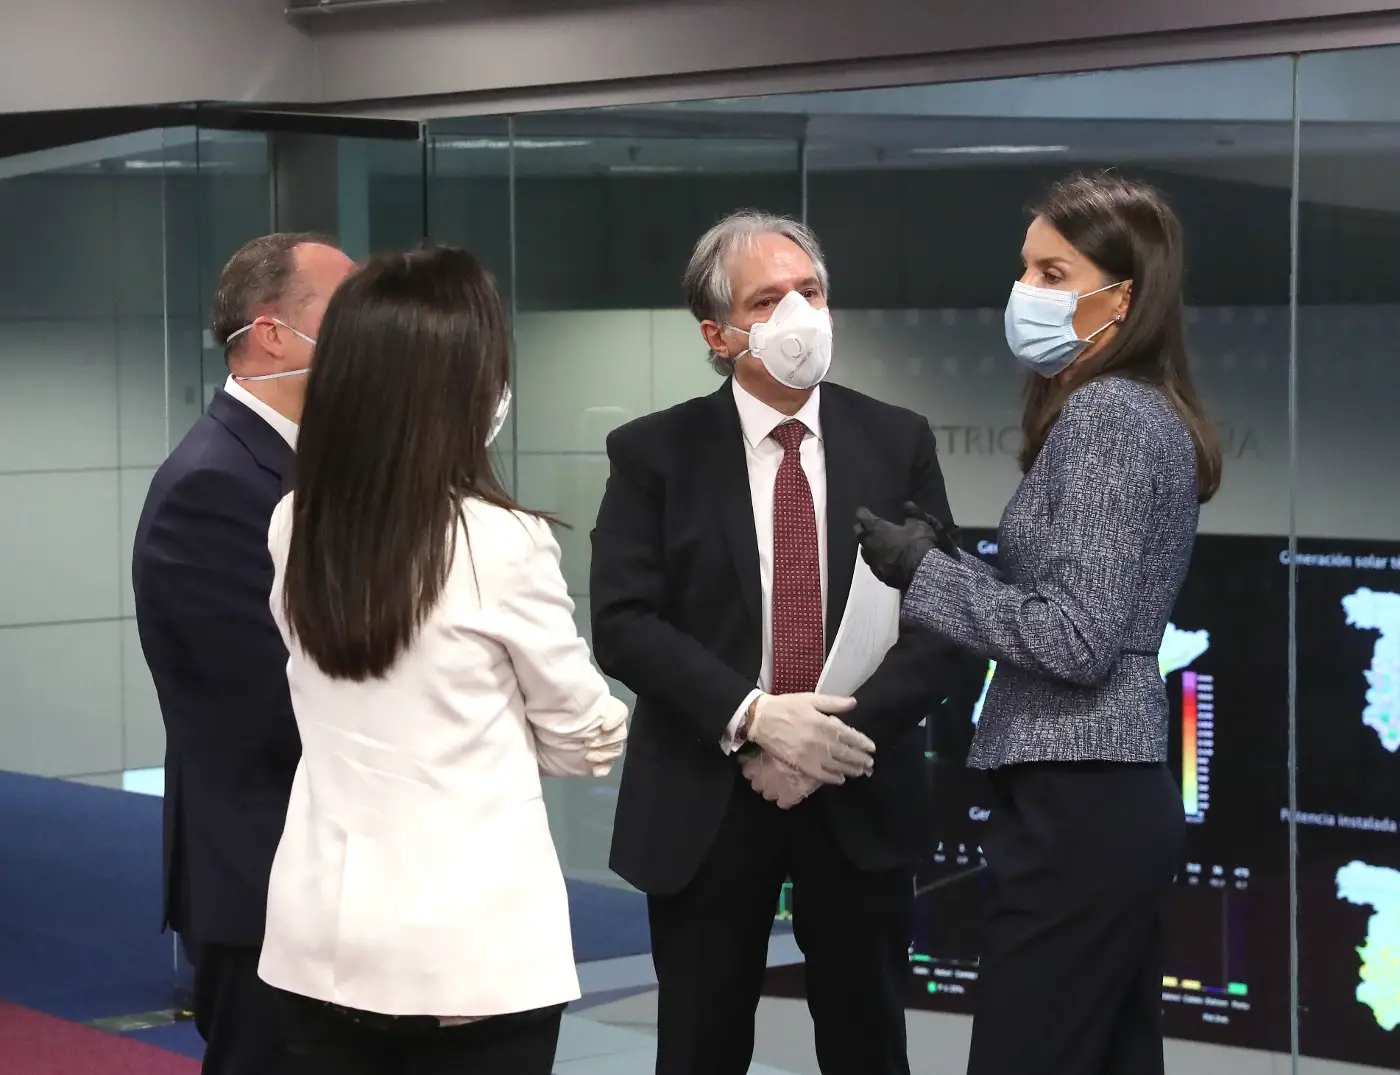 King Felipe and Queen Letizia undertook another public engagement amid coronavirus